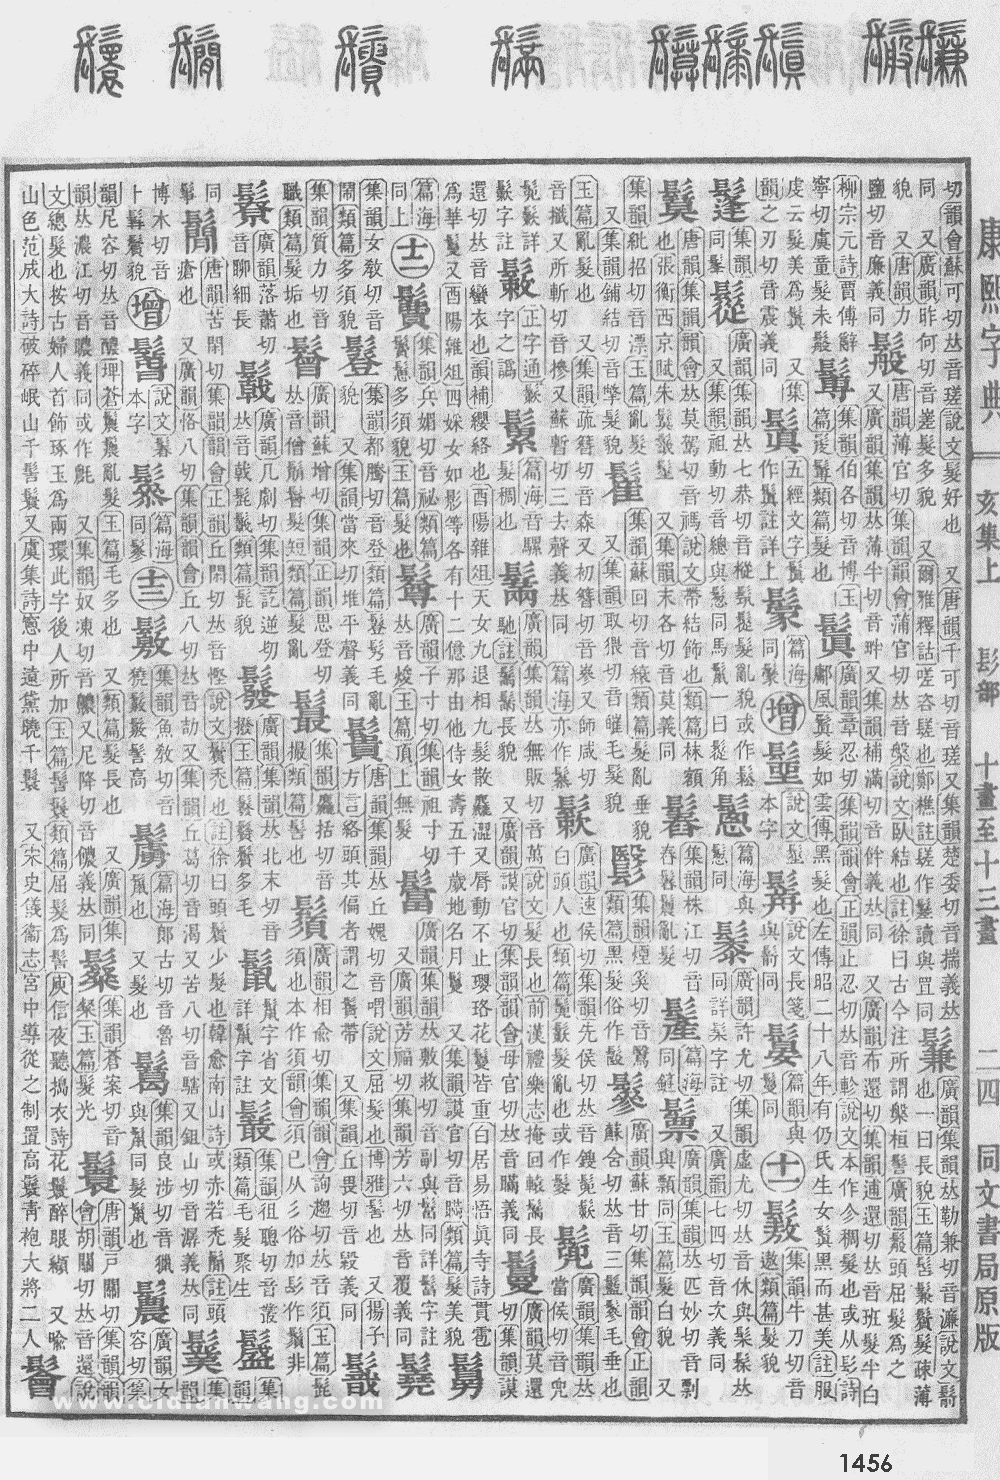 康熙字典掃描版第1456頁